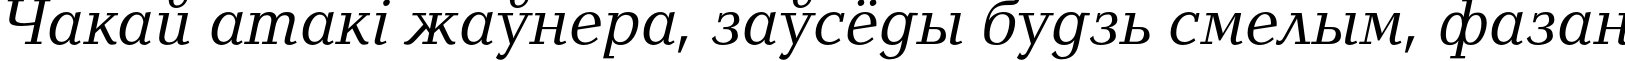 Пример написания шрифтом BalticaC Italic текста на белорусском